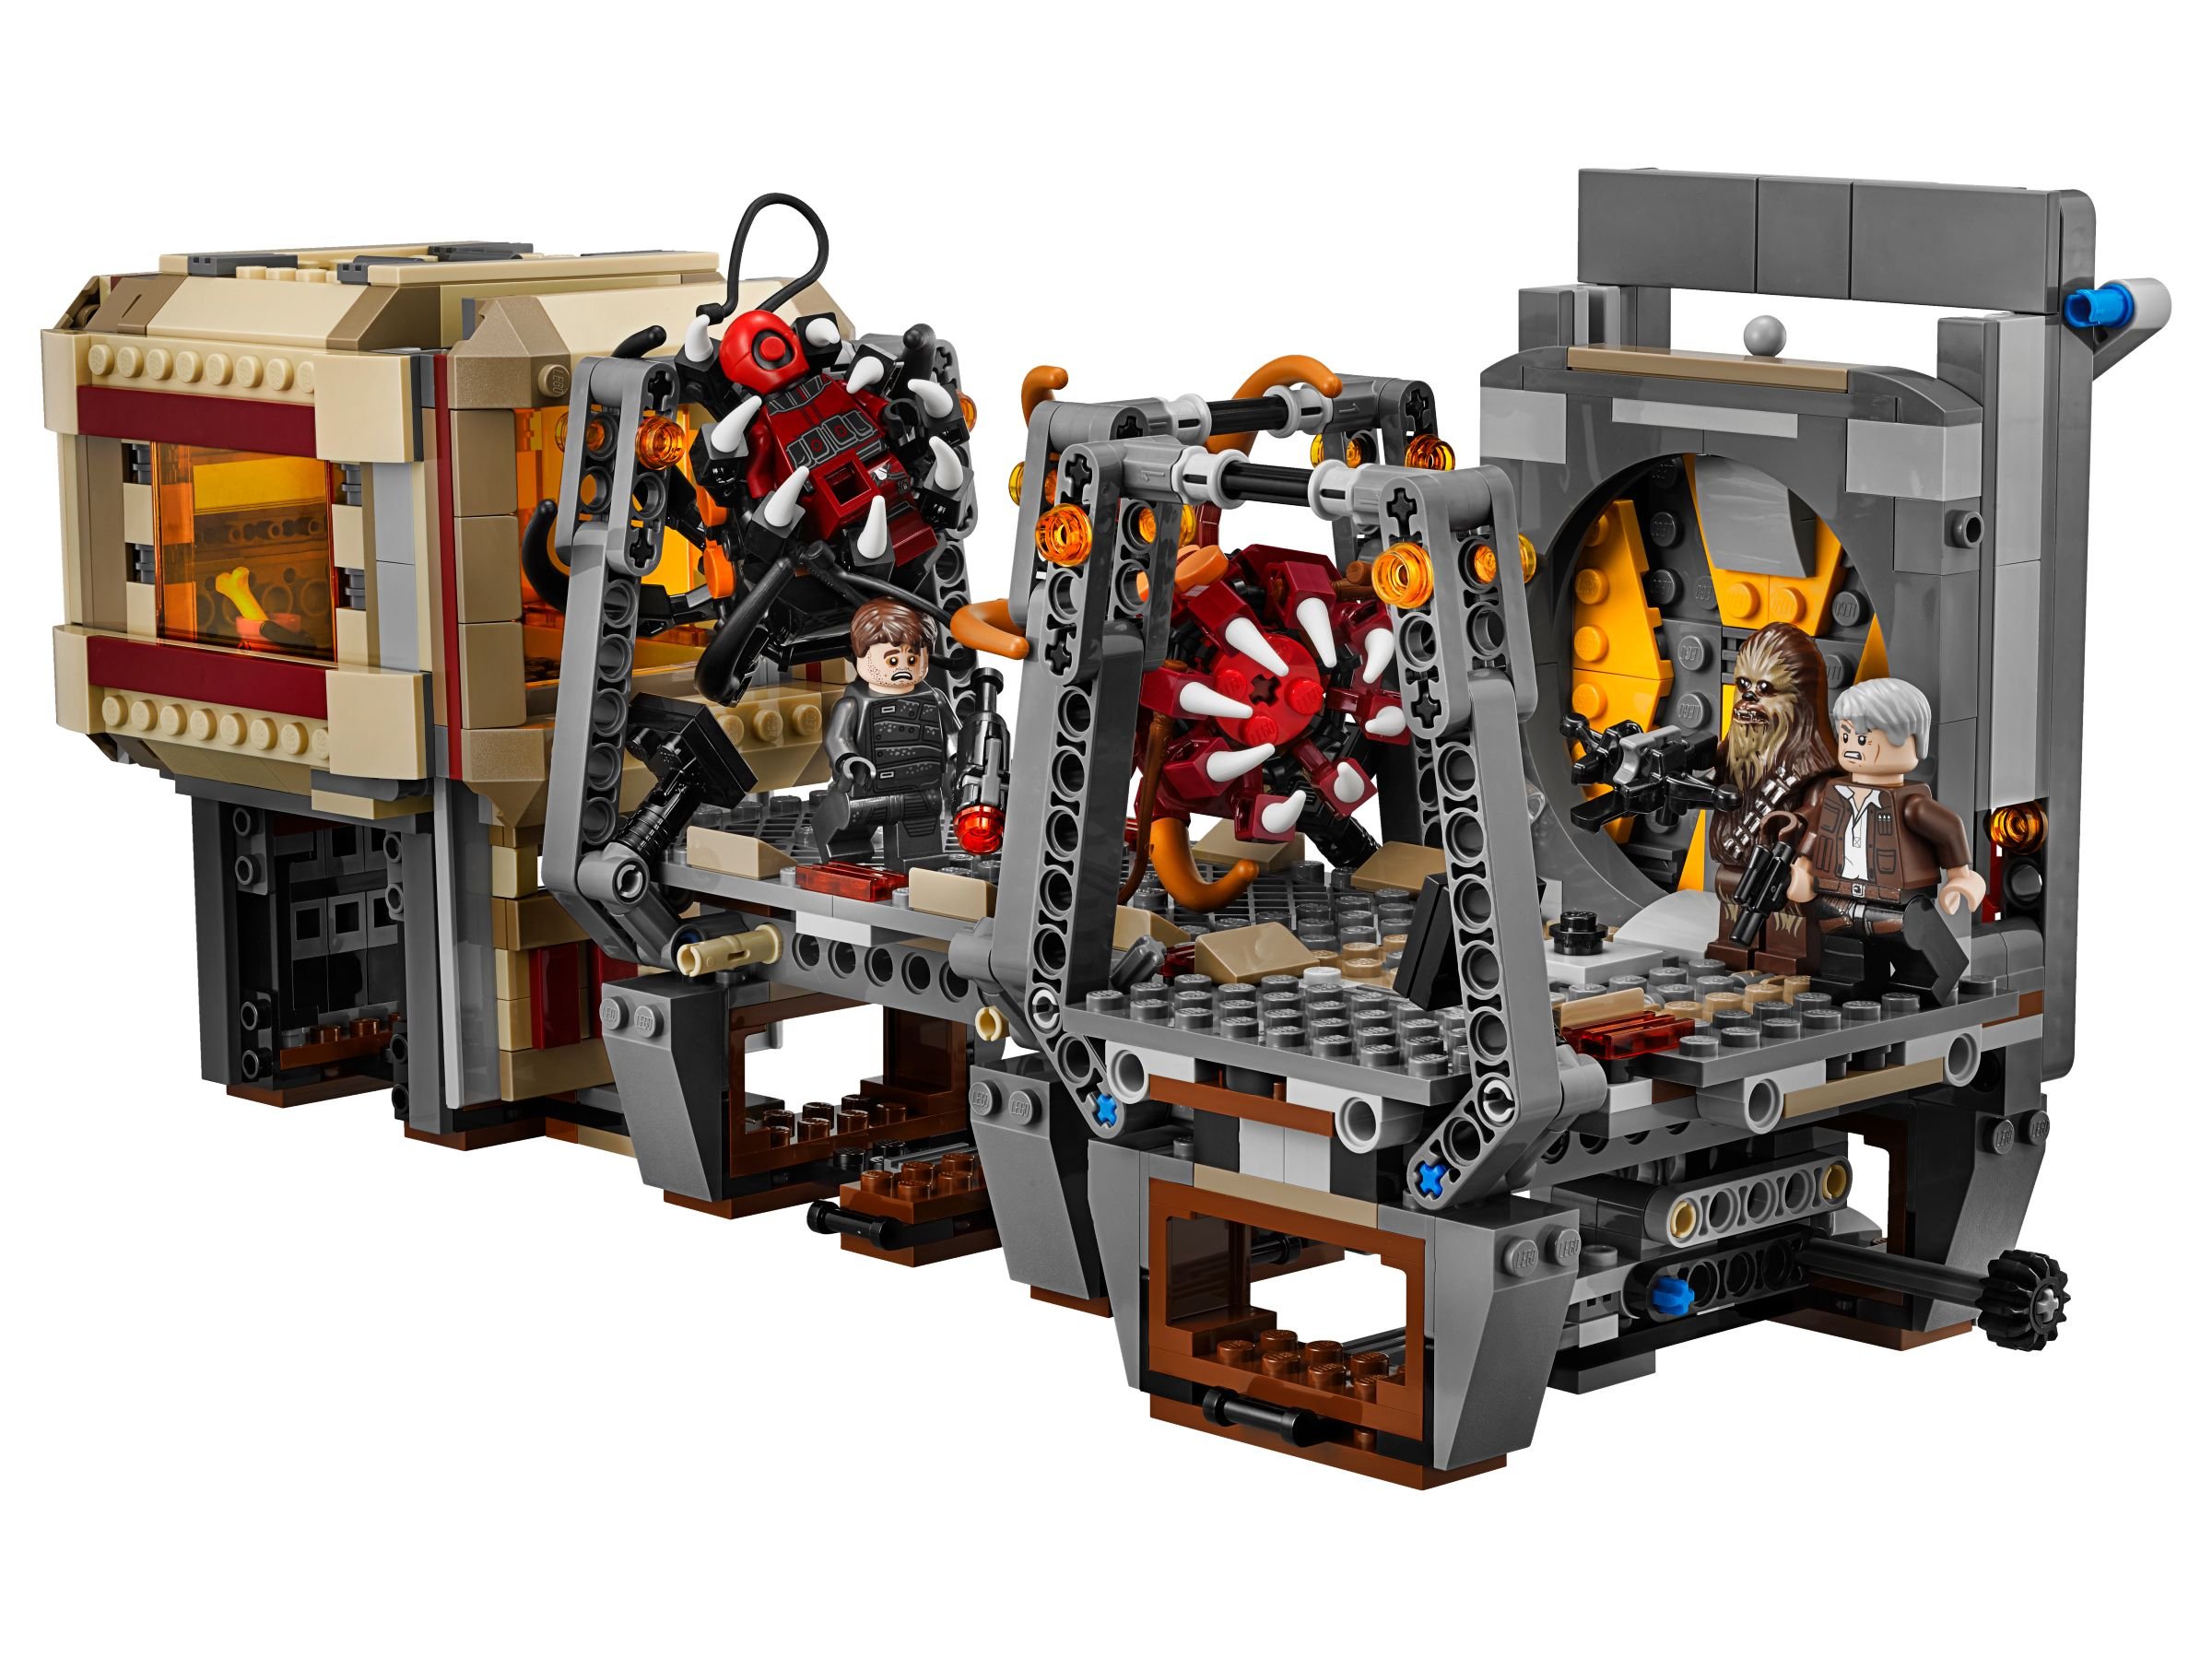 LEGO Star Wars 75180 Rathtar™ Escape LEGO_75180_alt2.jpg